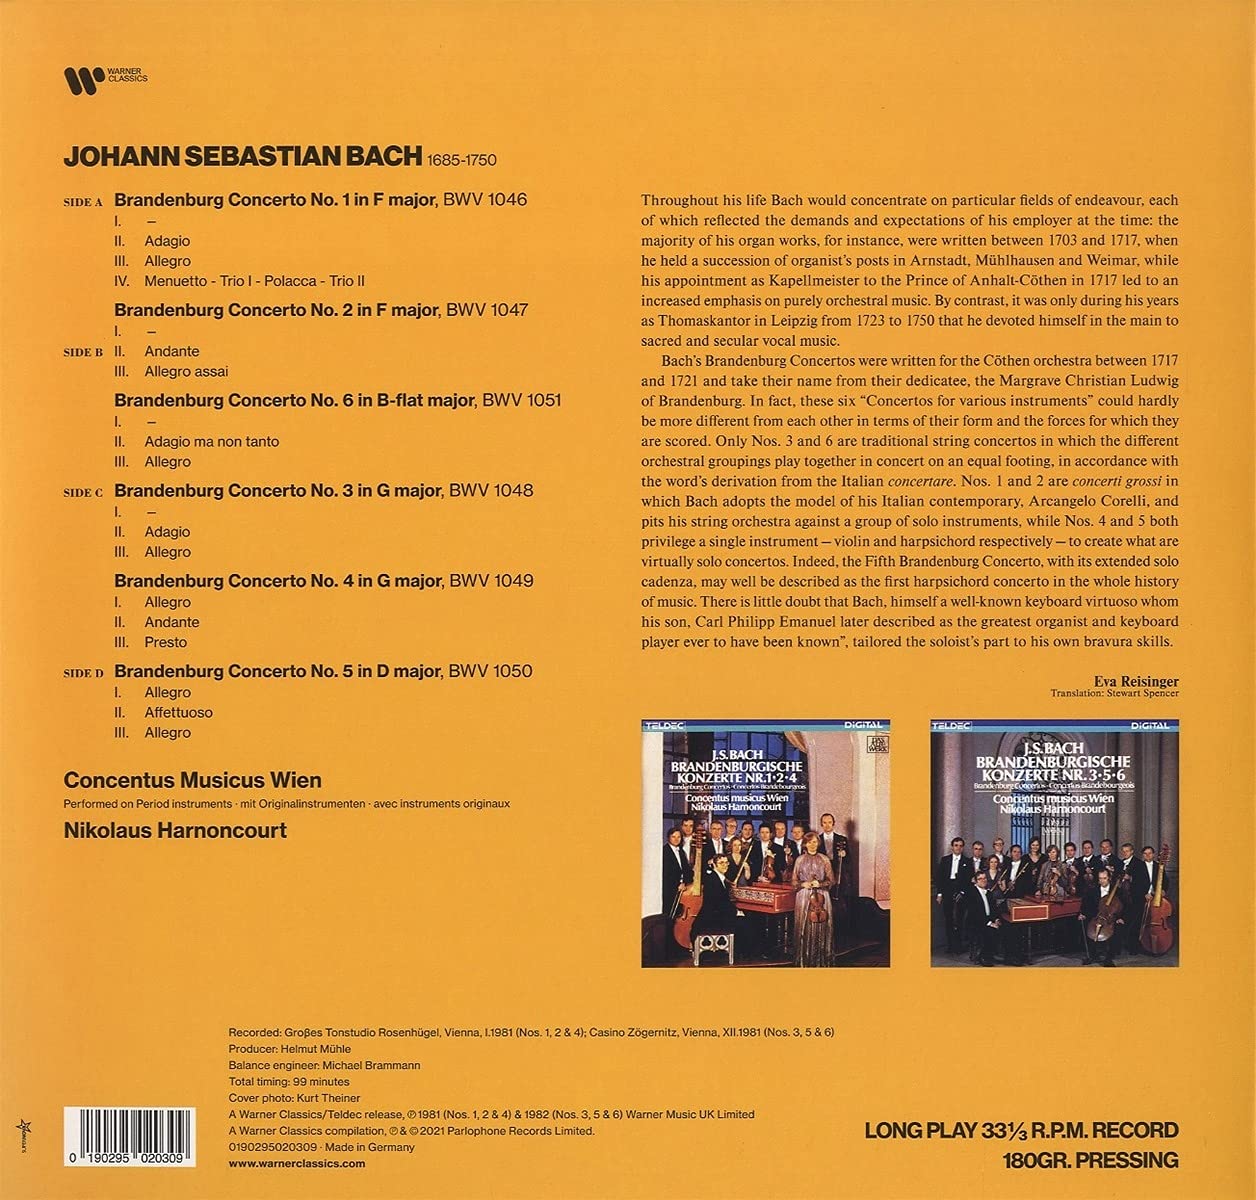 BACH: THE BRANDENBURG CONCERTOS - NIKOLAUS HARNONCOURT, CONCENTUS MUSICUS WIEN (2 LPS)